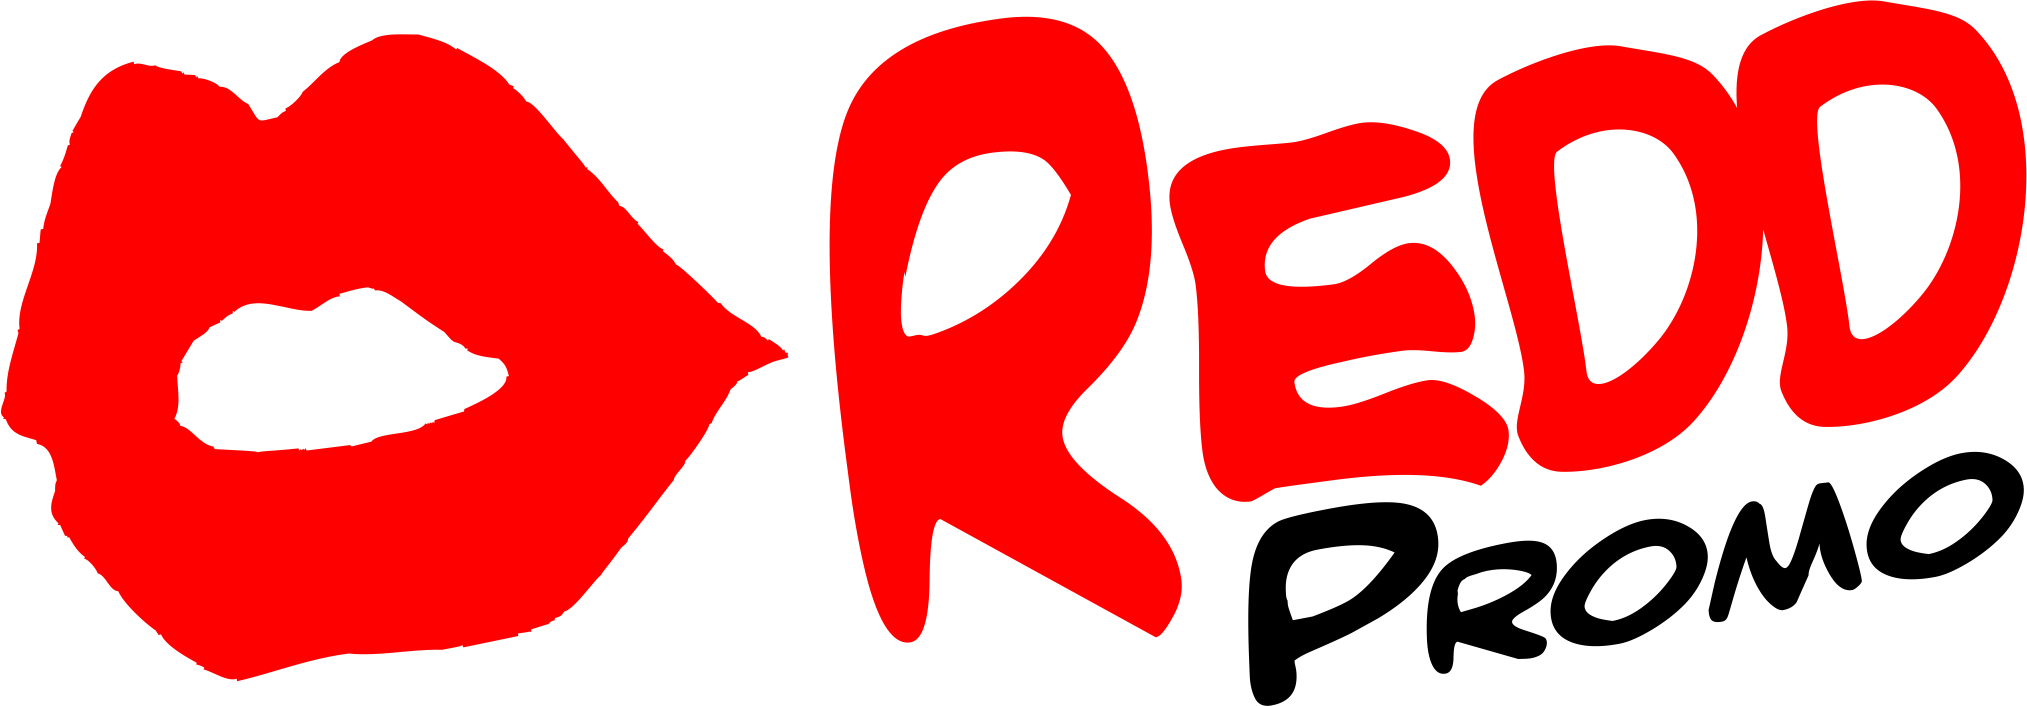 Redd Promo's Logo